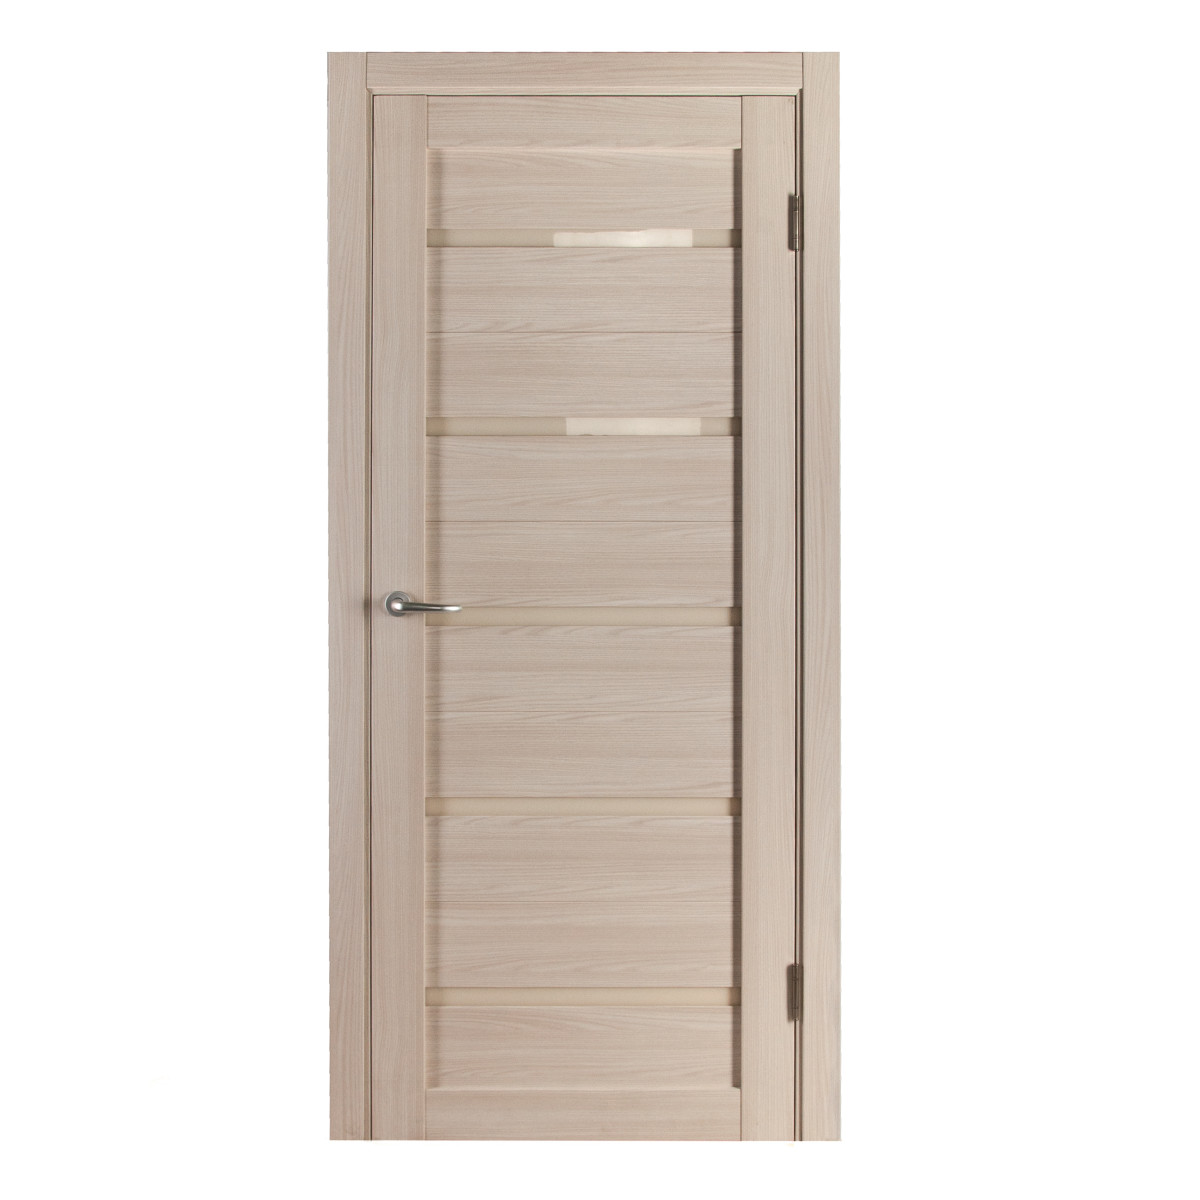 Дверь межкомнатная остеклённая с замком и петлями в комплекте Калипсо 60x200 см, Hardflex, цвет ясень бора